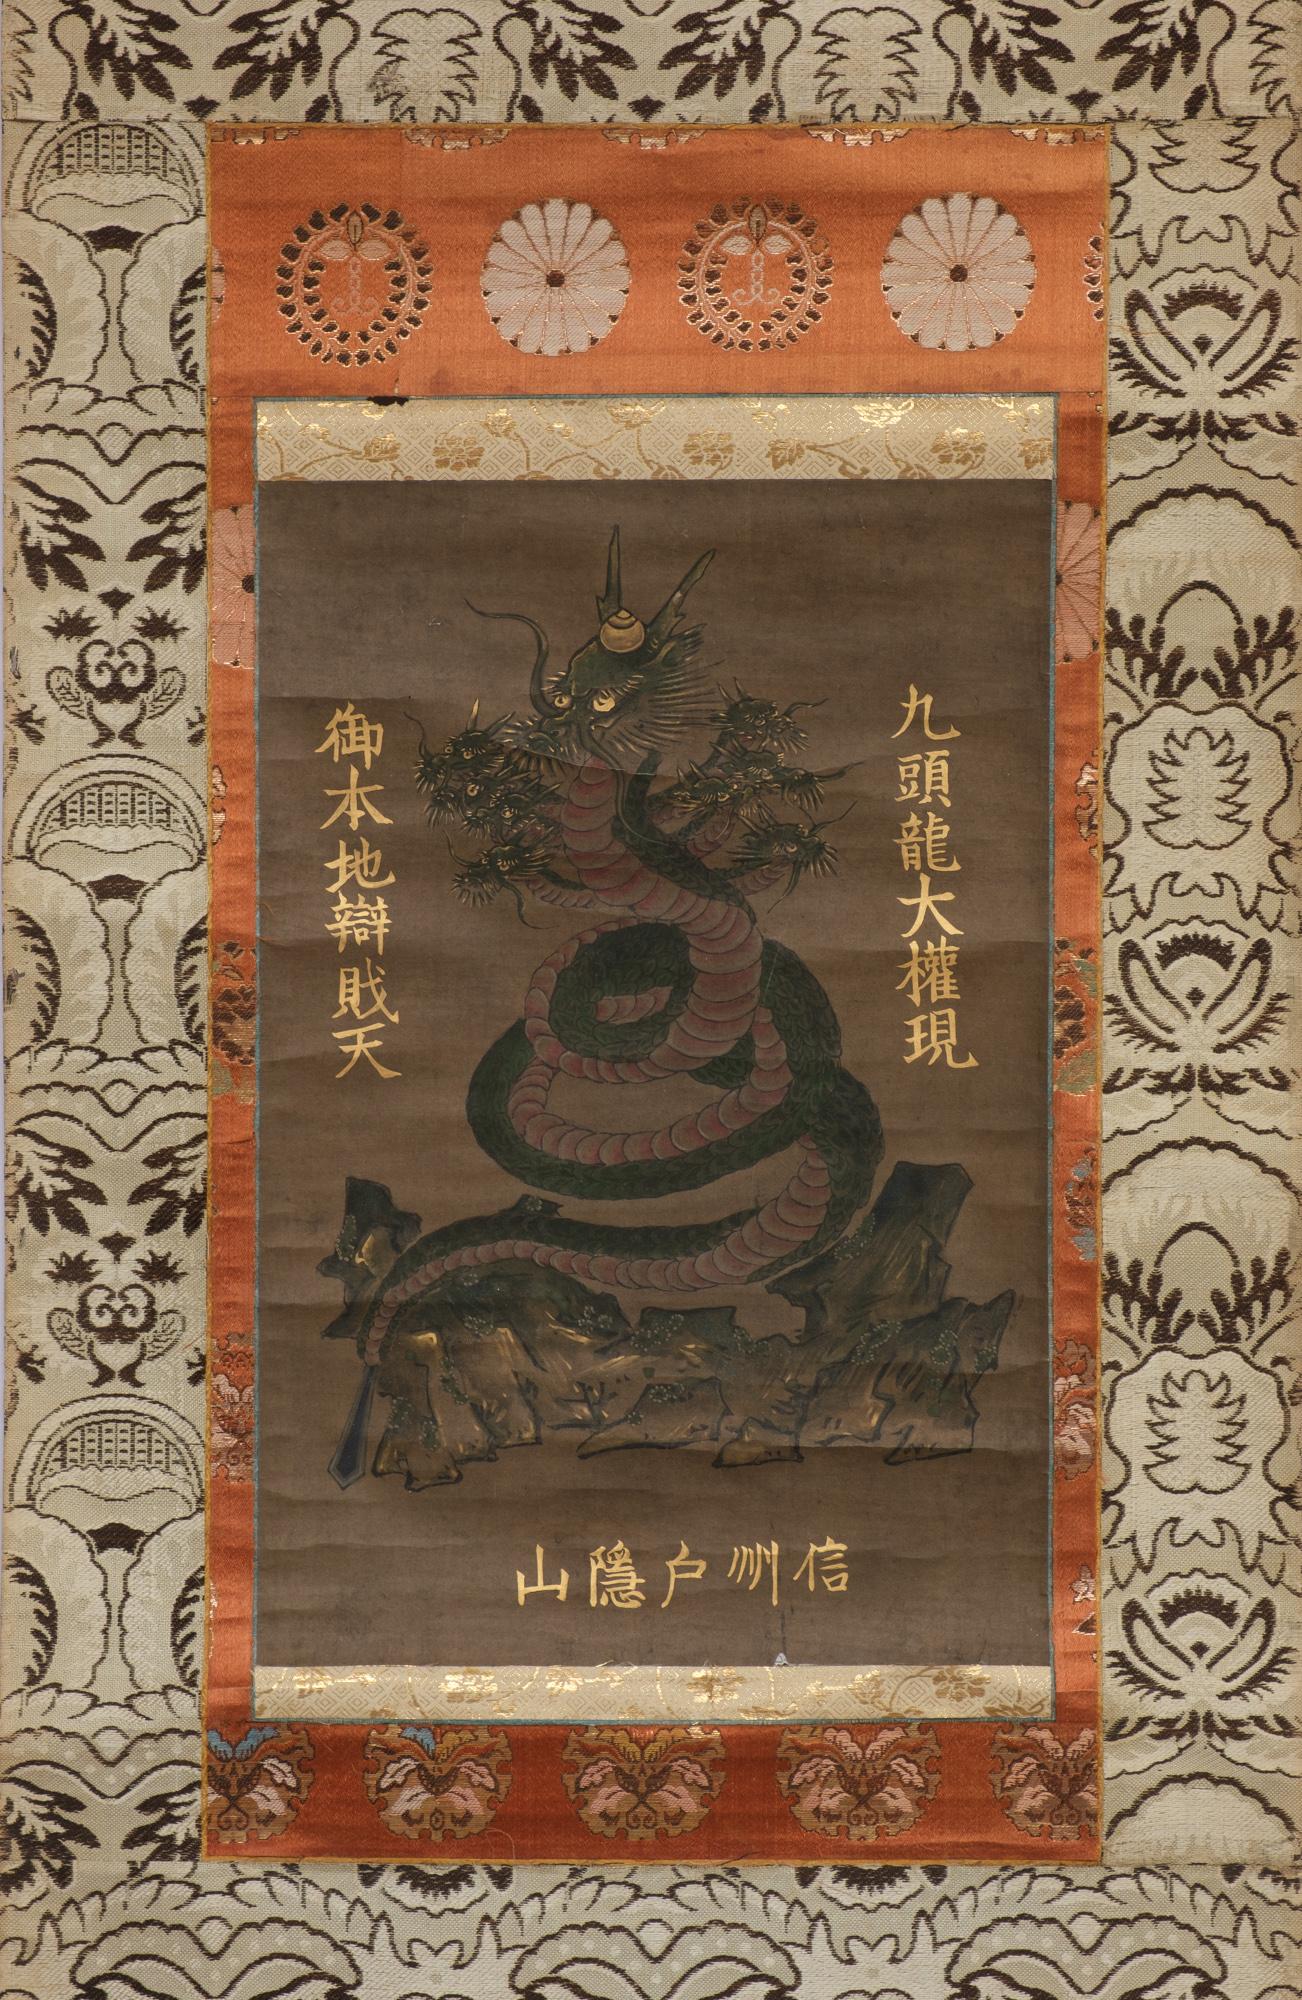 Étonnant kakejiku (rouleau suspendu) japonais vieux de 260 ans avec une peinture raffinée de la divinité du dragon à neuf têtes, avec une flamme bouddhiste en guise de couronne et une épée en guise de pointe de sa queue.

Il représente la grande